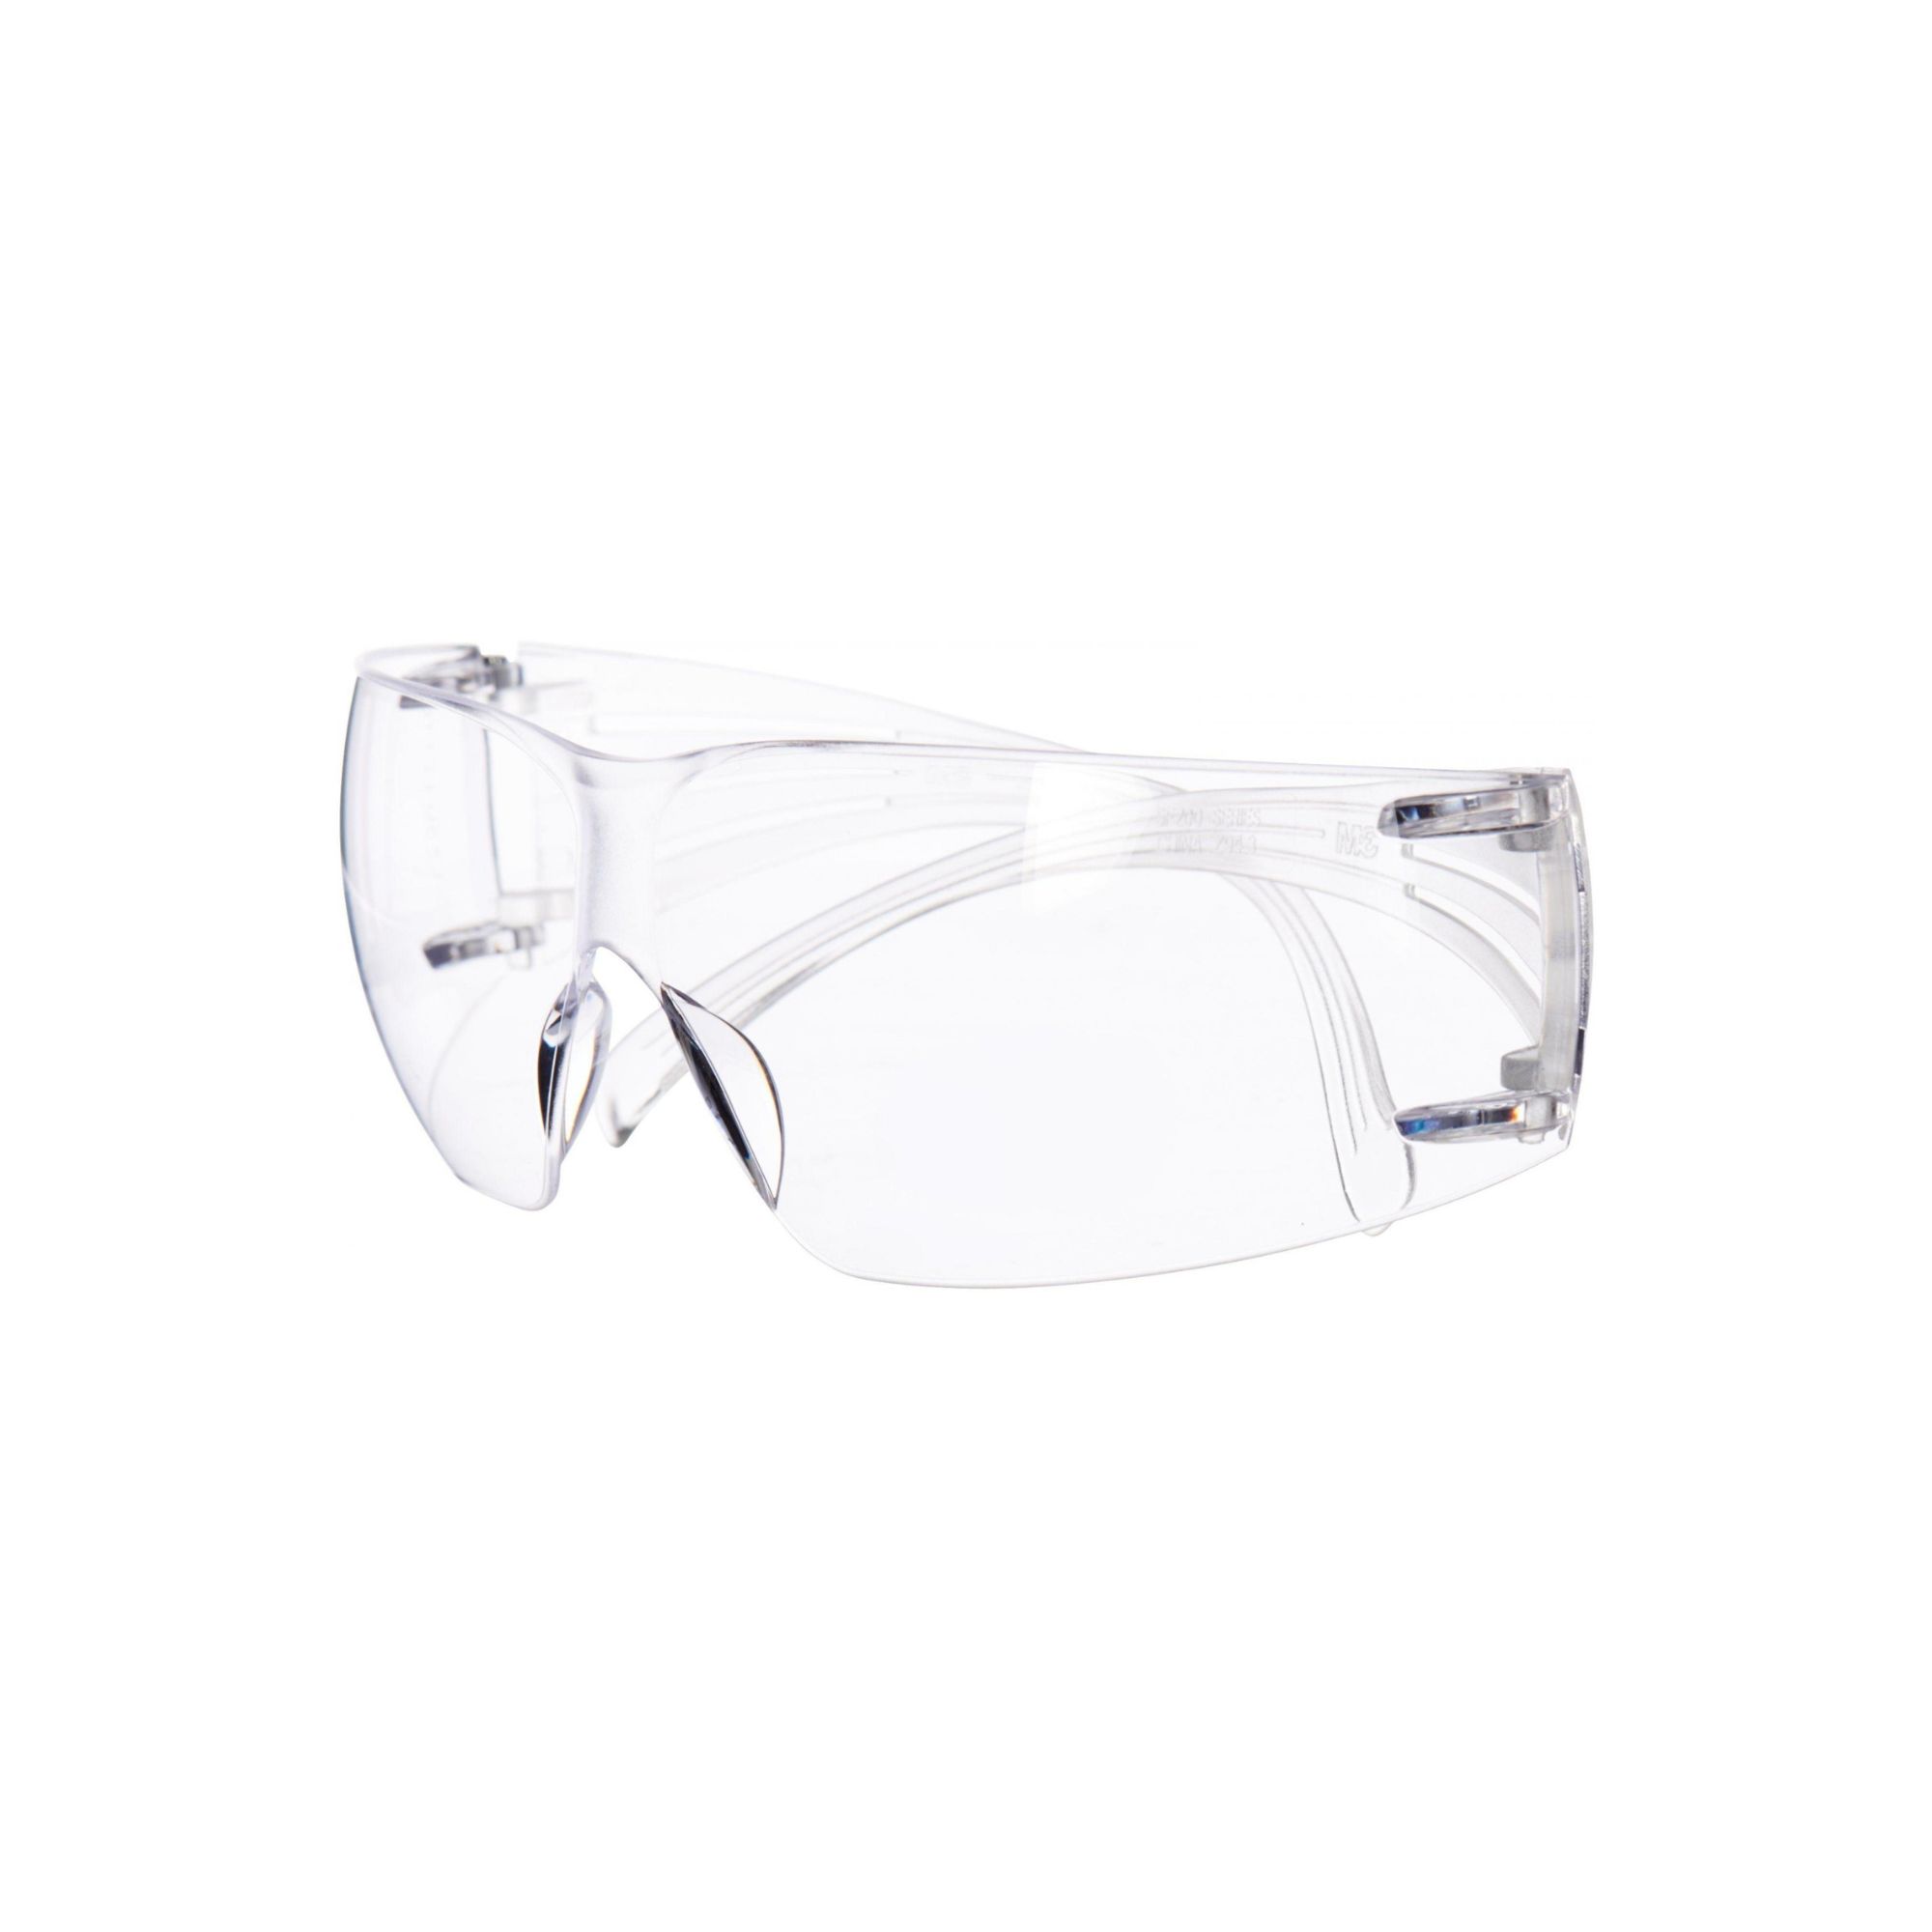 Oculos de segurança SF201AS 3M